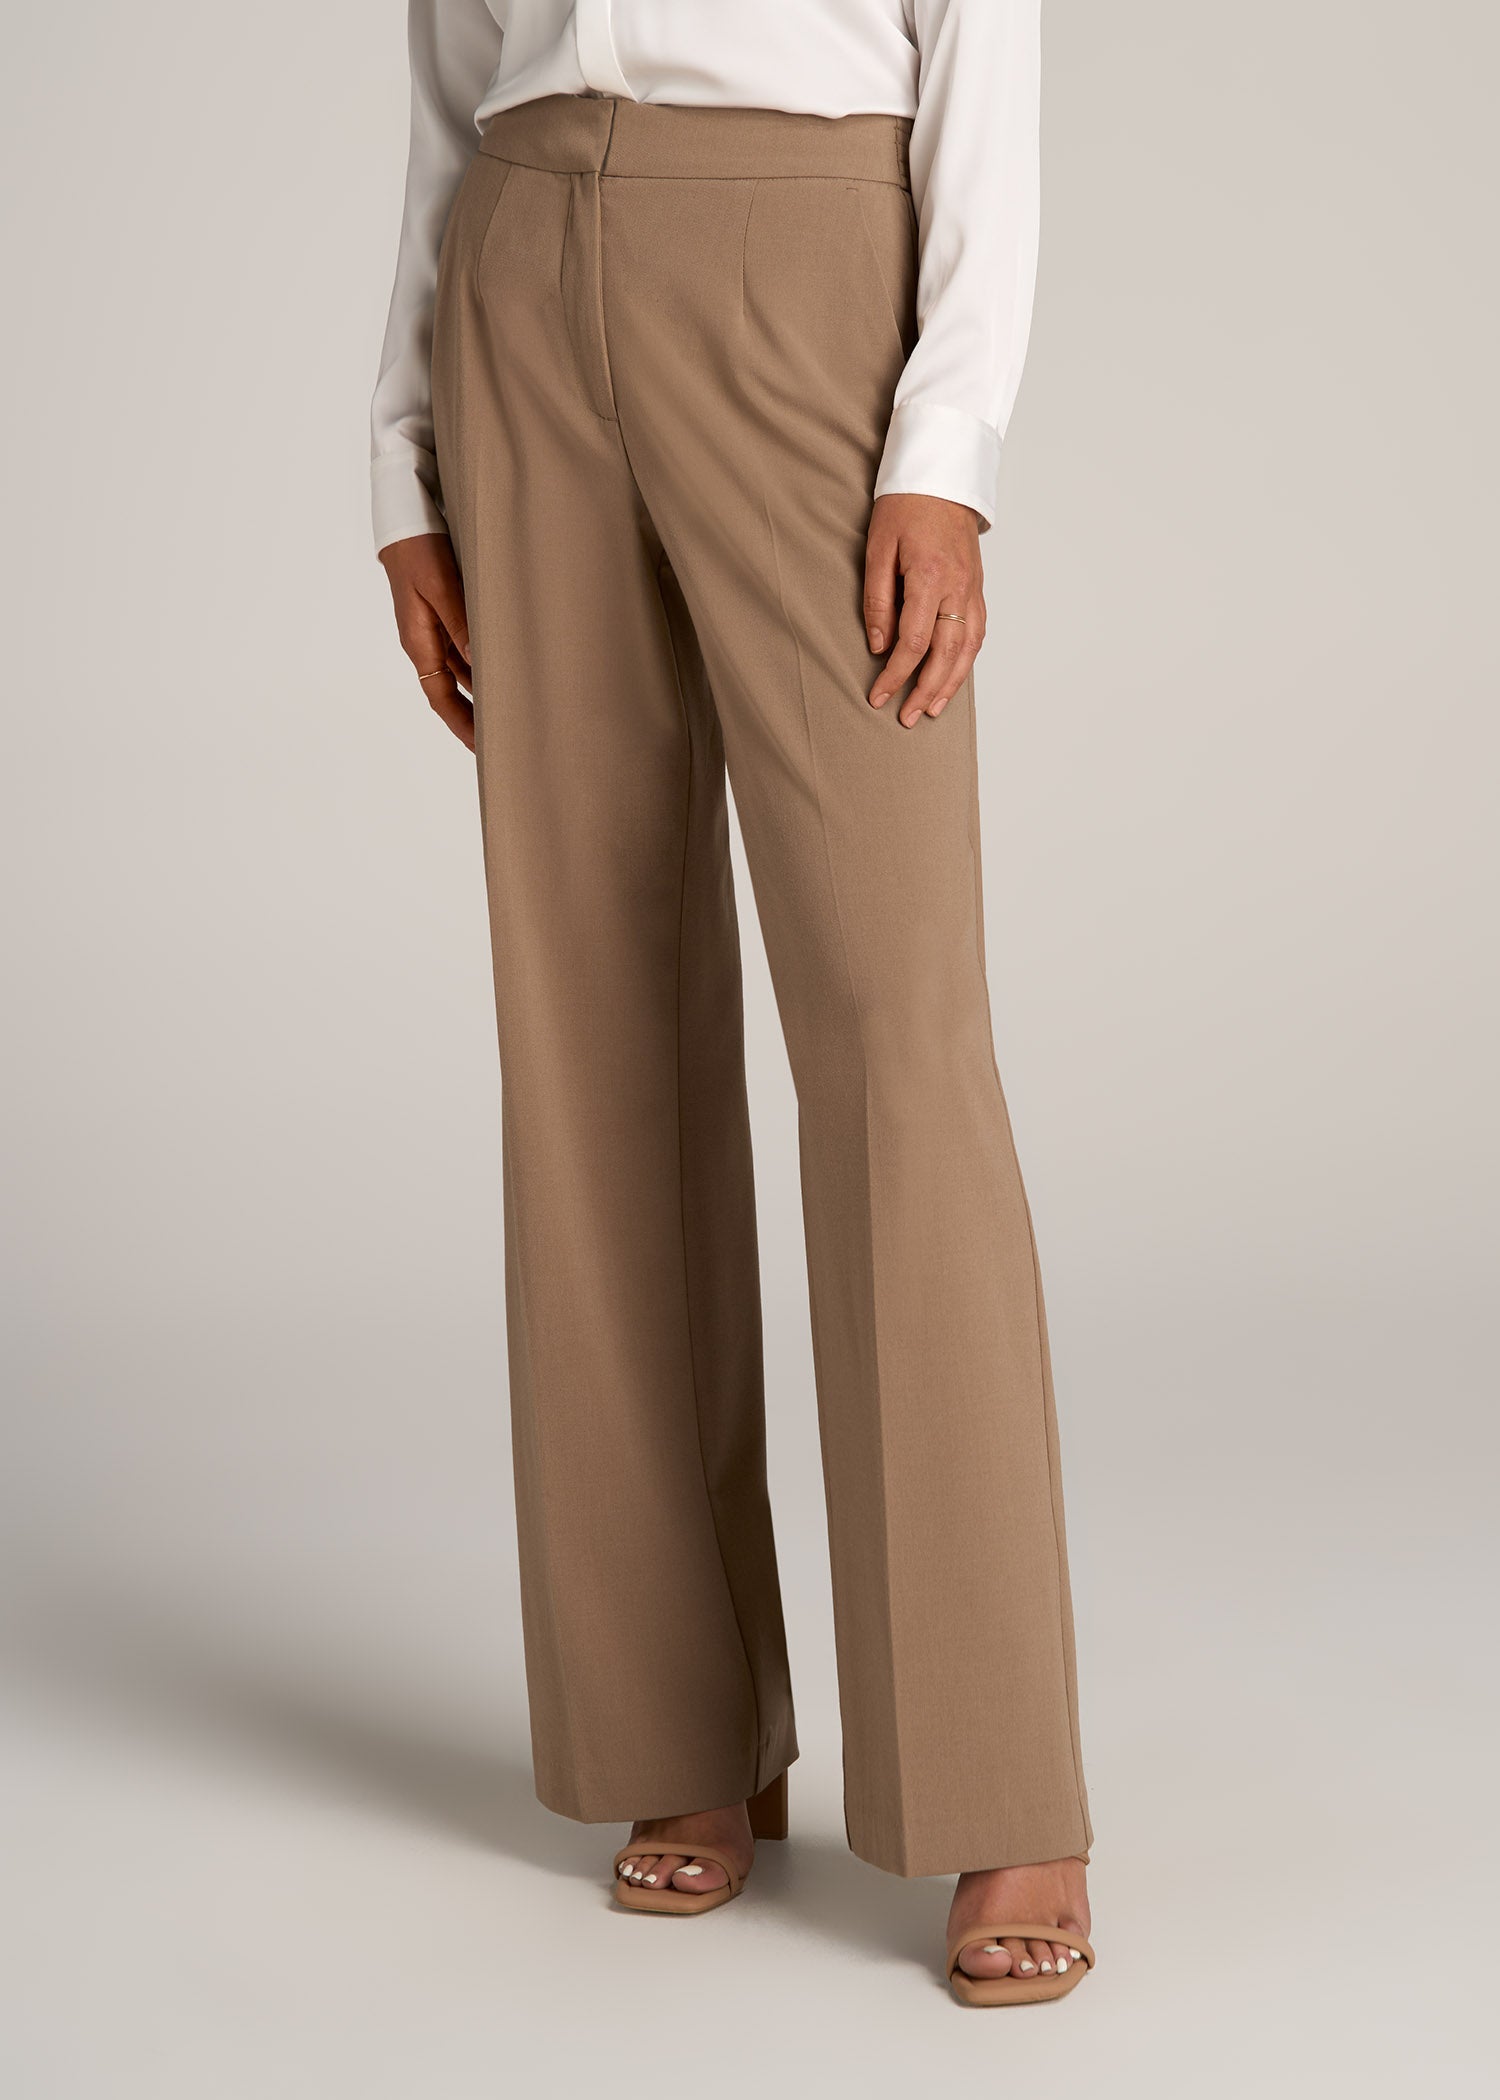 http://americantall.com/cdn/shop/files/American-Tall-Women-Flat-front-wide-Leg-Dress-Pants-Fawn-front.jpg?v=1694460985